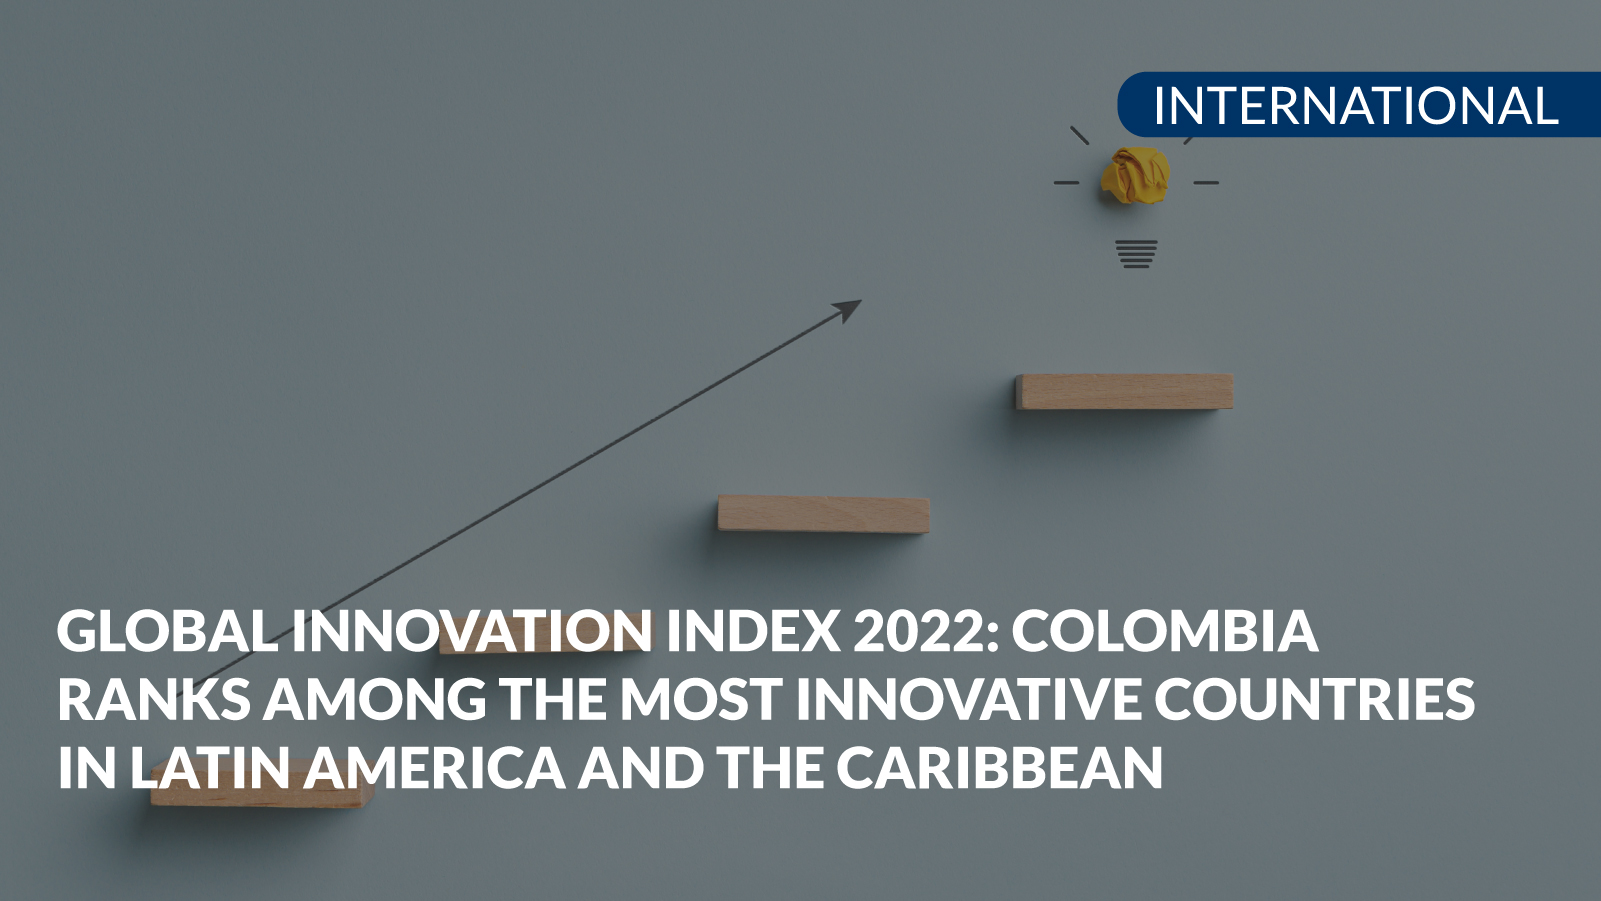 global innovation index